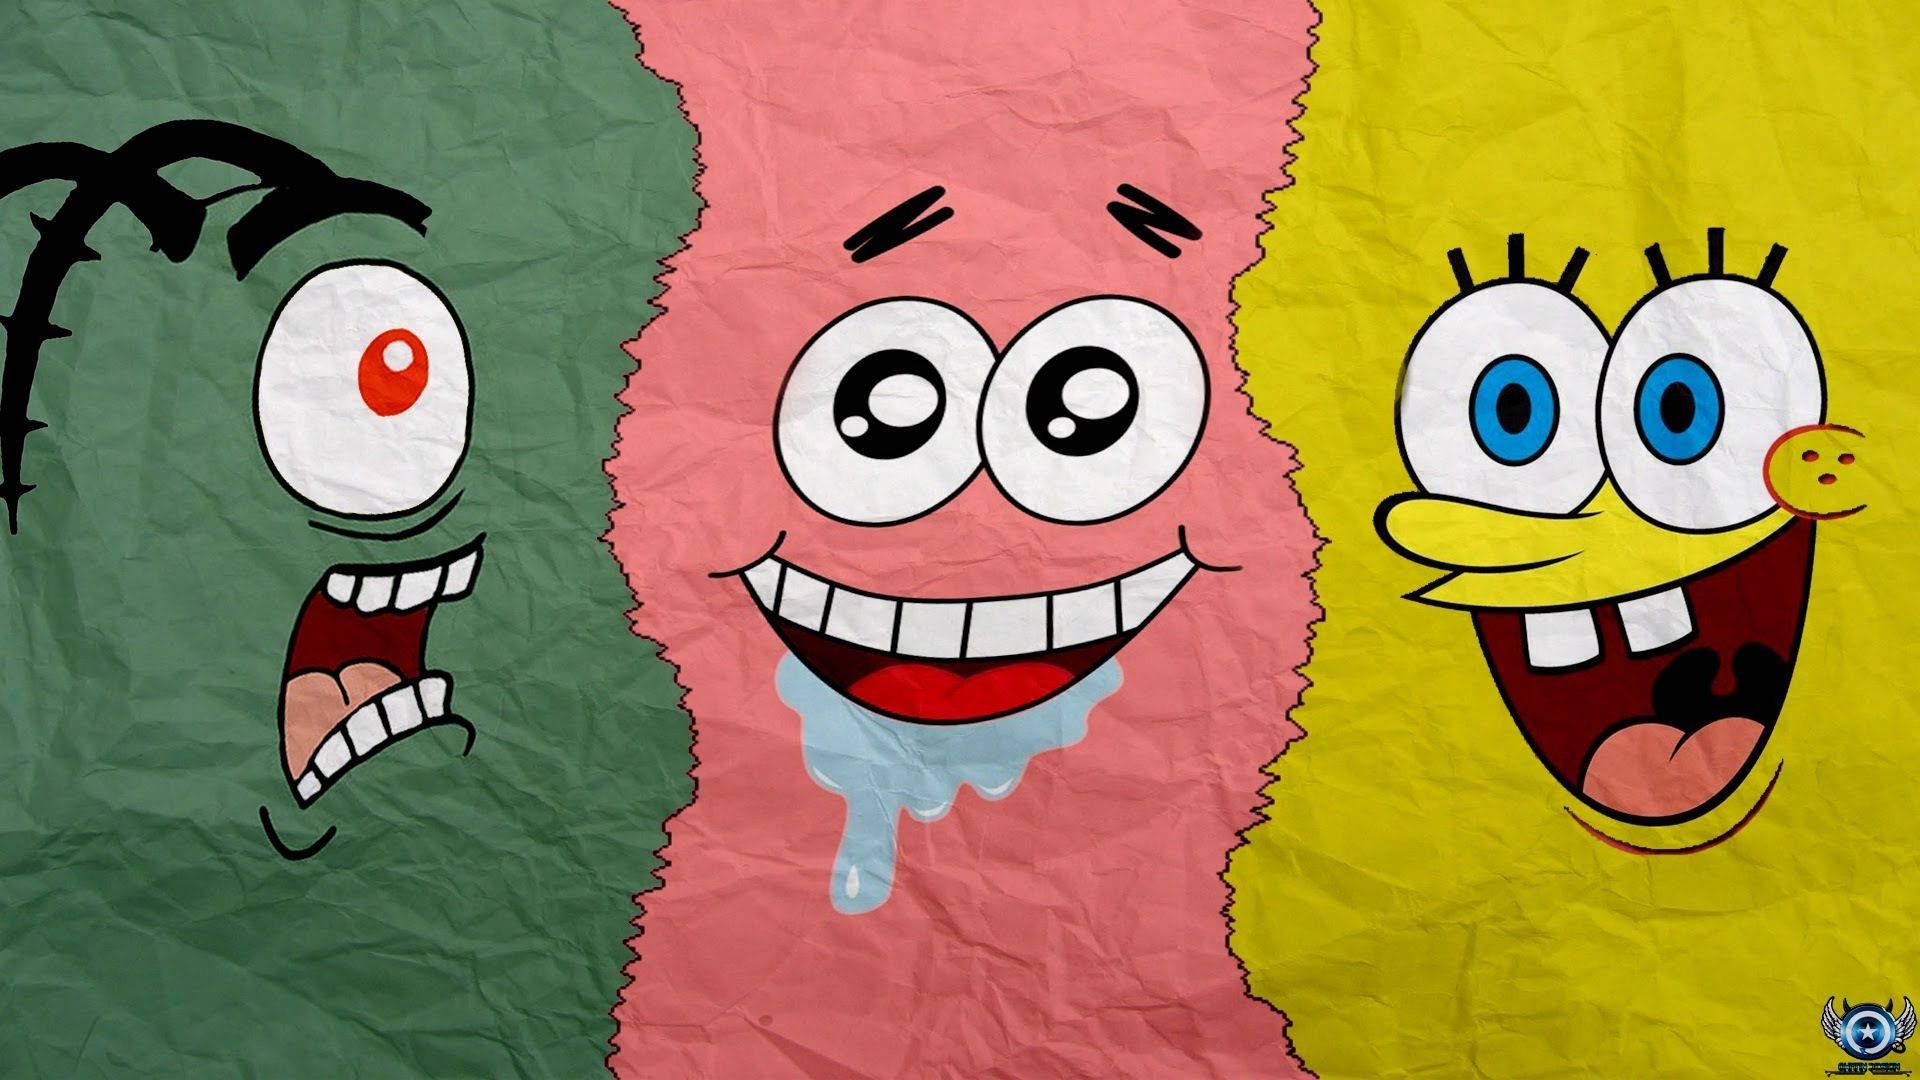 Spongebob Puts On His Best Adventure Gear Wallpaper